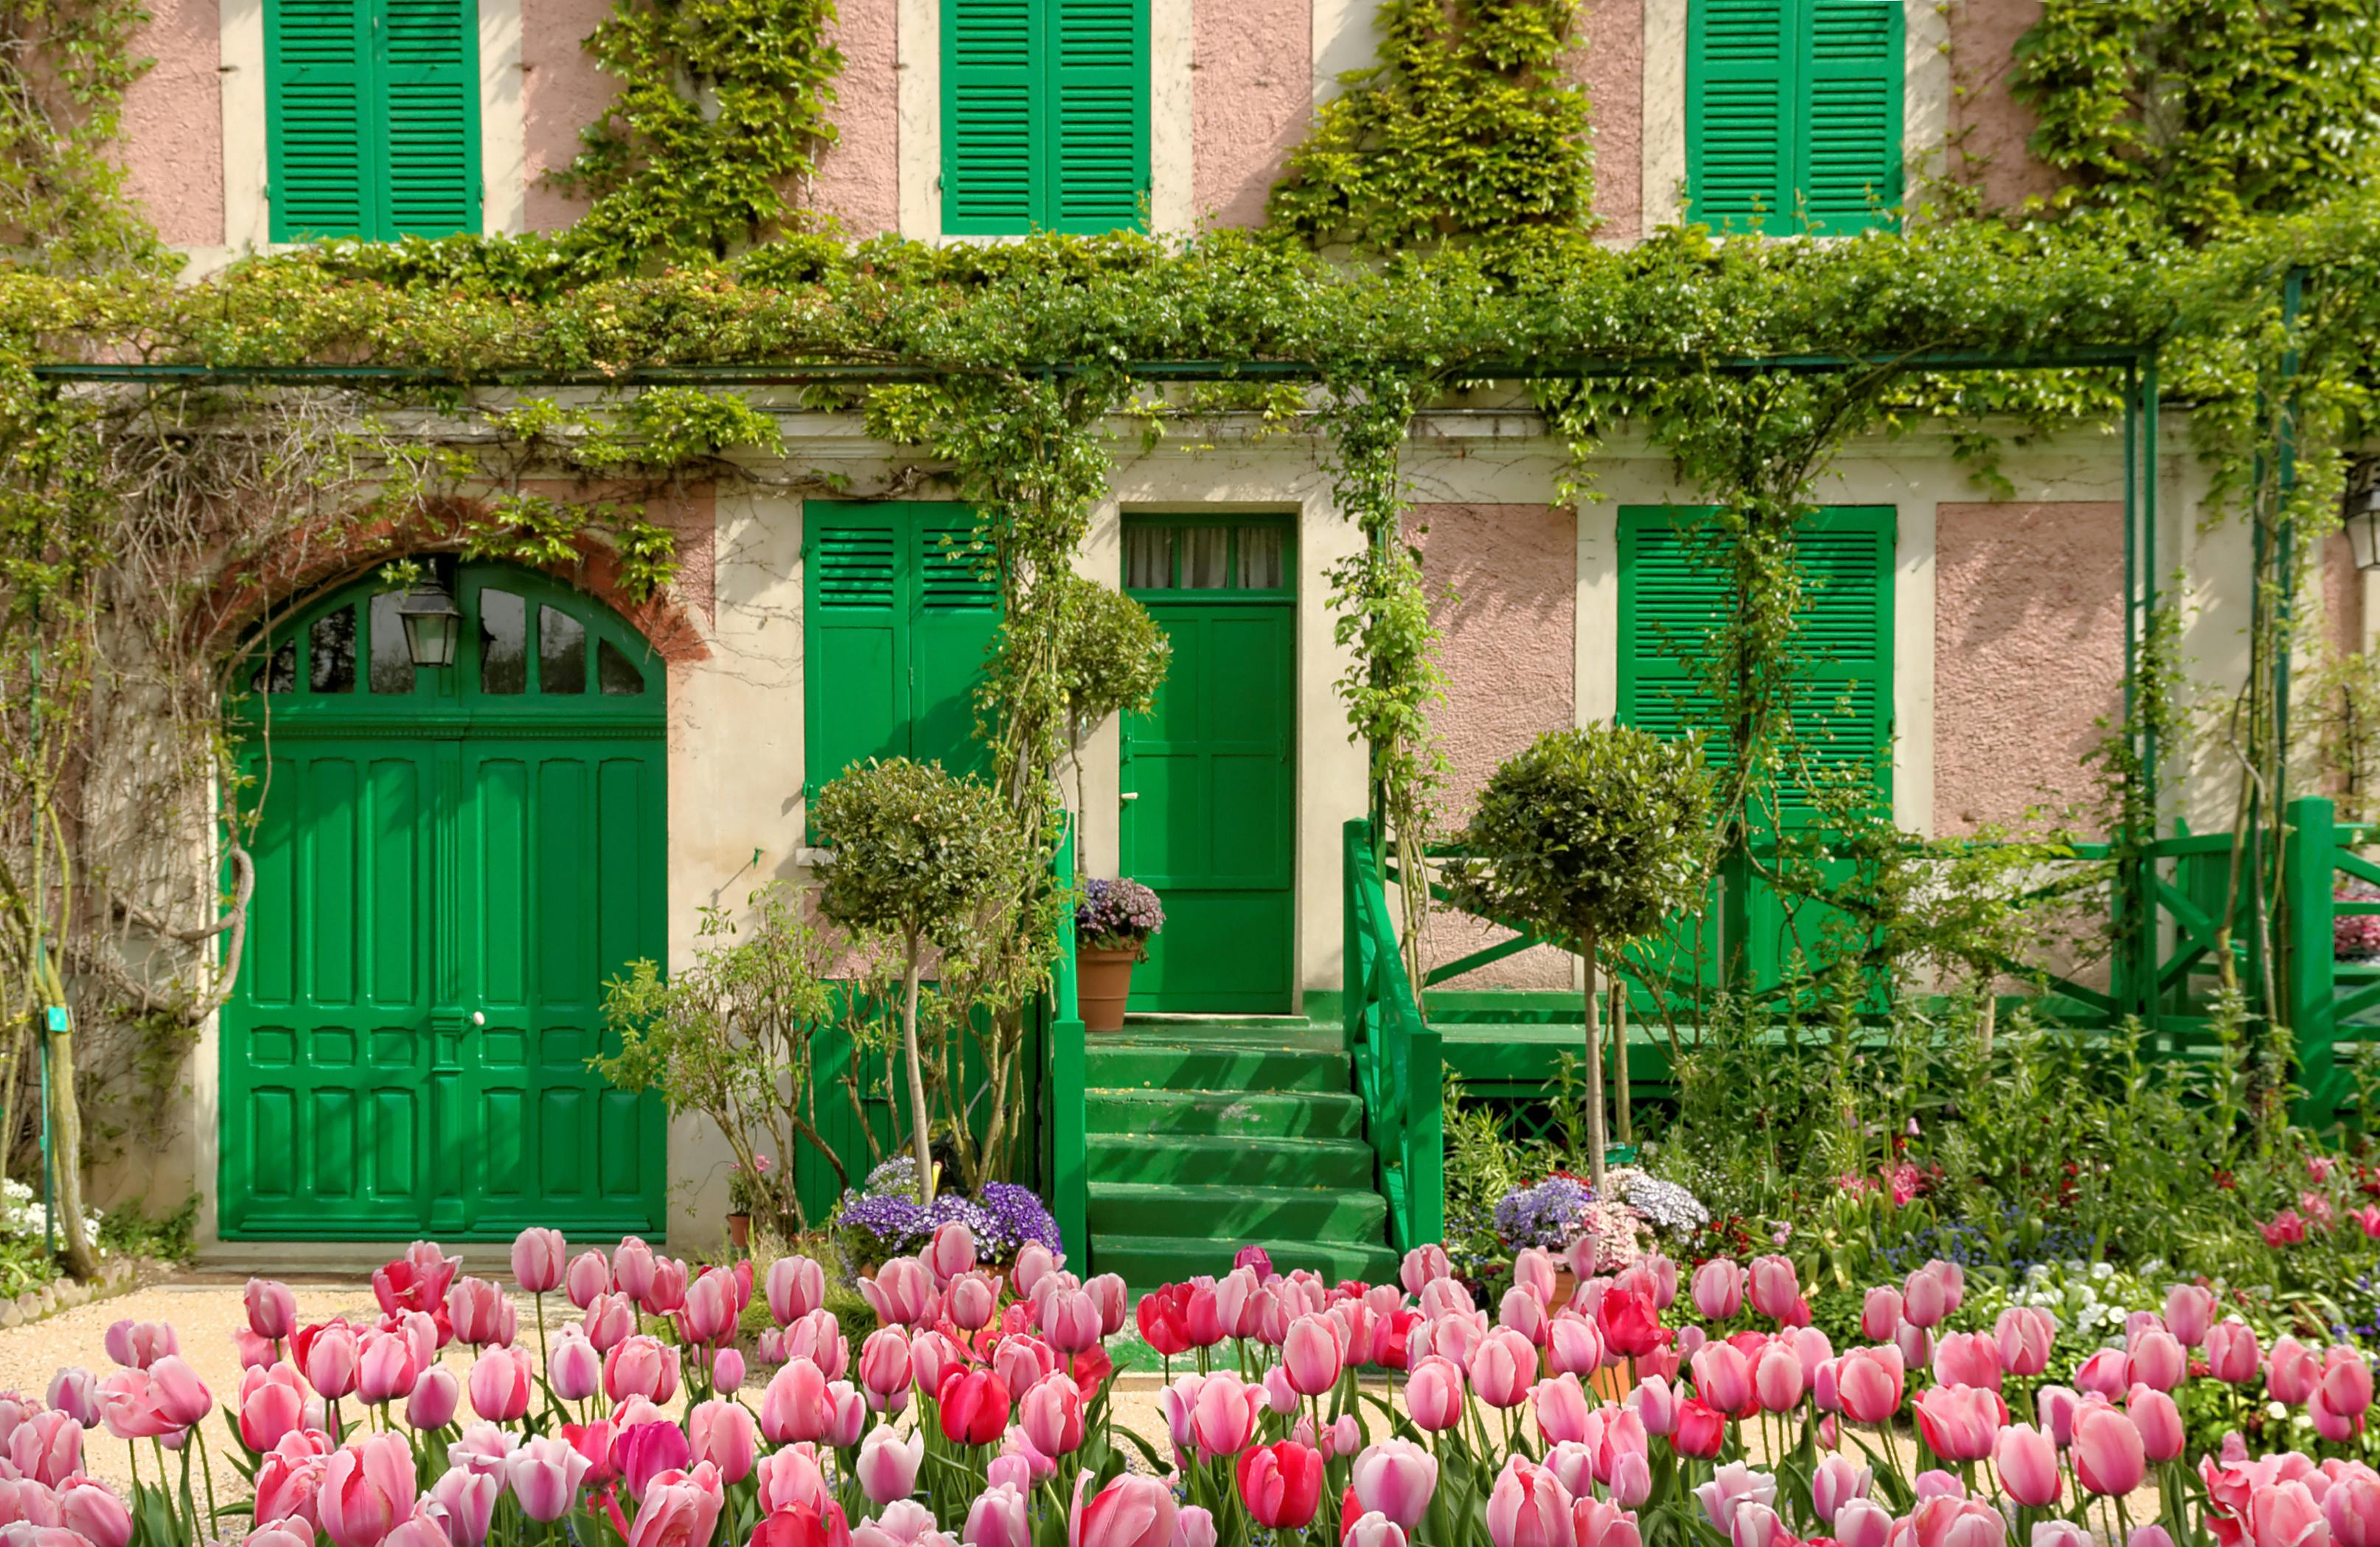 Viagem de um dia aos Jardins de Monet em Giverny e à casa de Van Gogh em Auvers-sur-Oise saindo de Paris